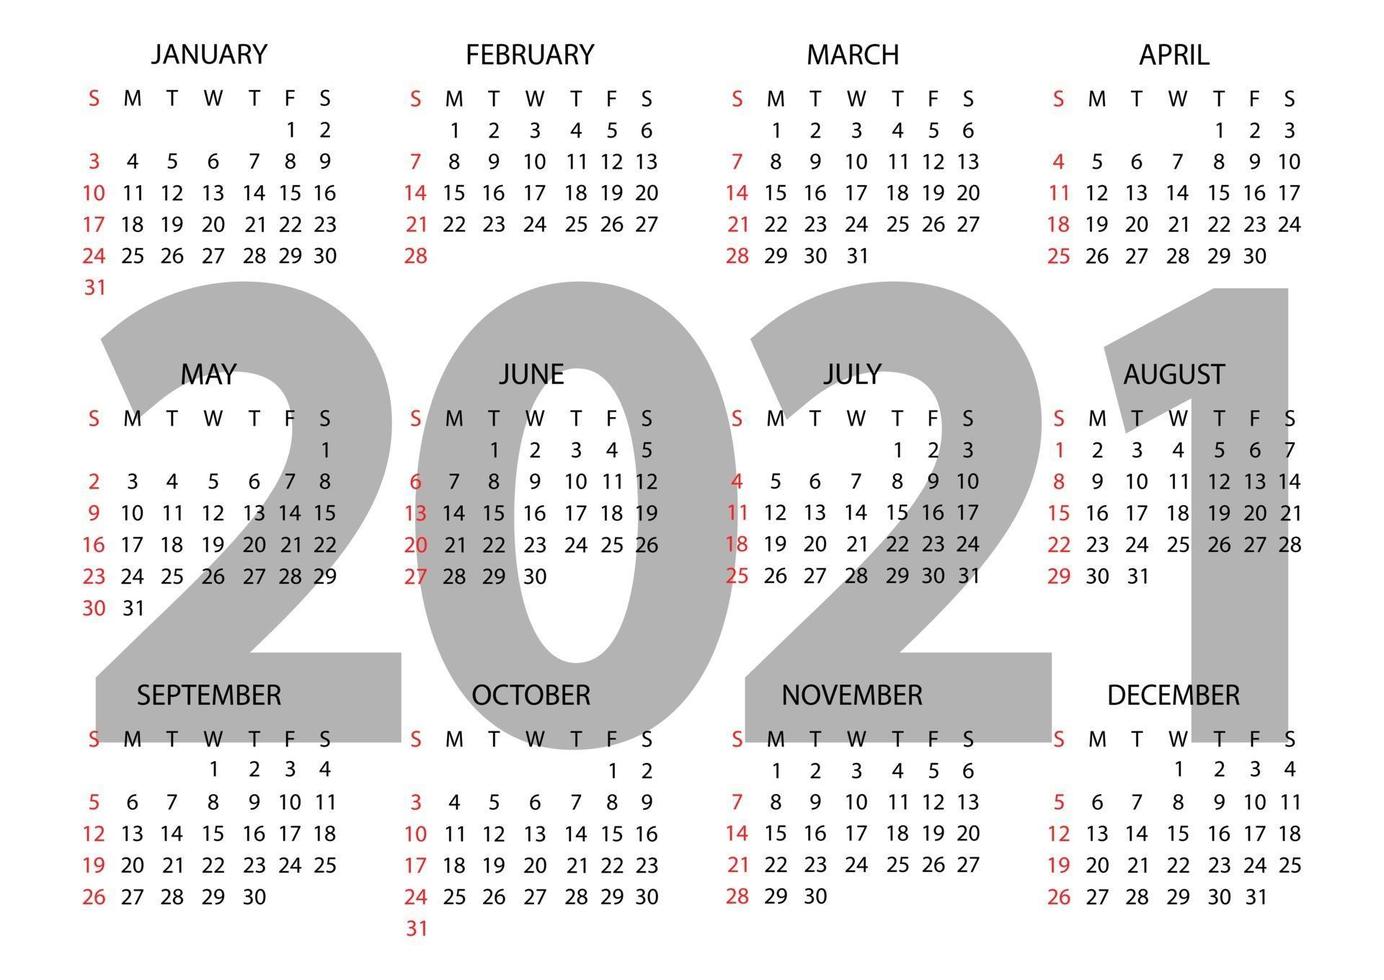 Kalender 2021 Jahr. die Woche beginnt am Sonntag. jährliche horizontale Kalendervorlage 2021. Kalenderdesign in schwarzen und weißen Farben, Sonntag in roten Farben. Vektor